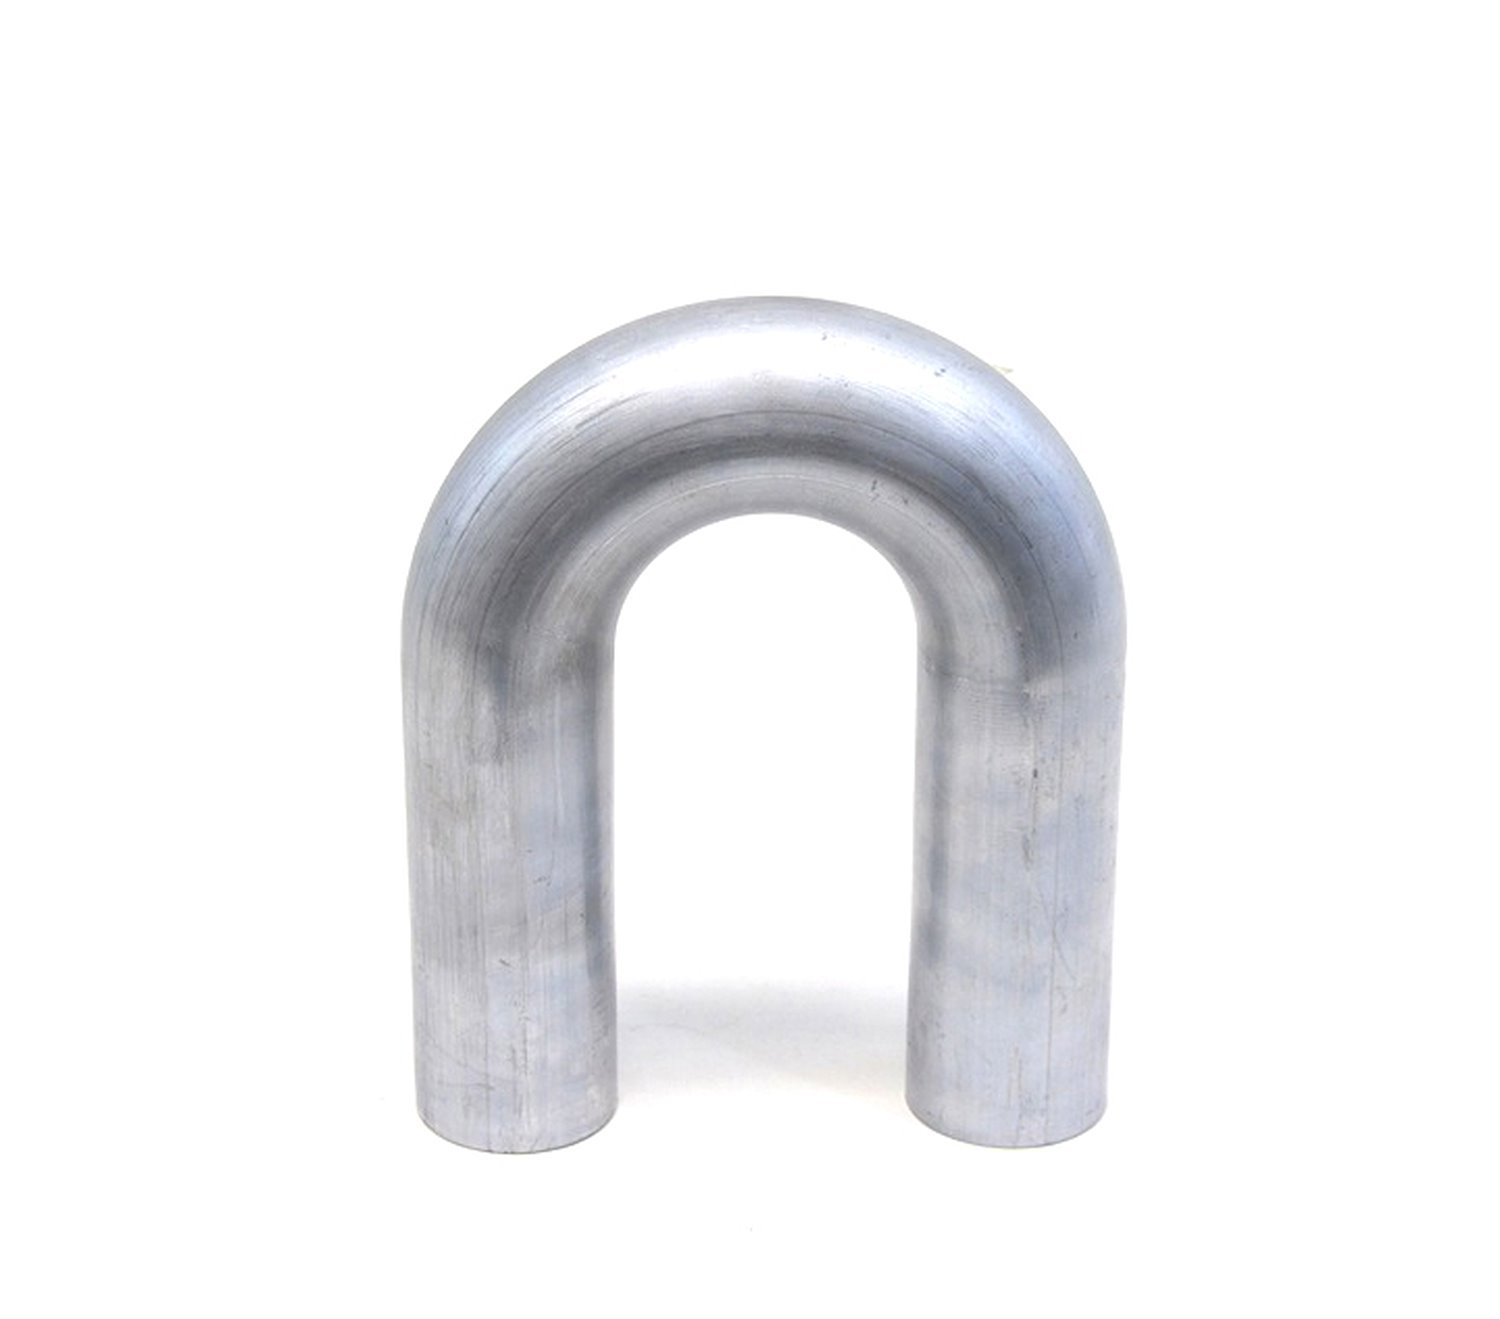 AT180-175-CLR-25 Aluminum Elbow Tube, 6061 Aluminum, 180-Degree U Bend Elbow Tubing, 1-3/4 in. OD, Tight Radius, 2-1/2 in. CLR